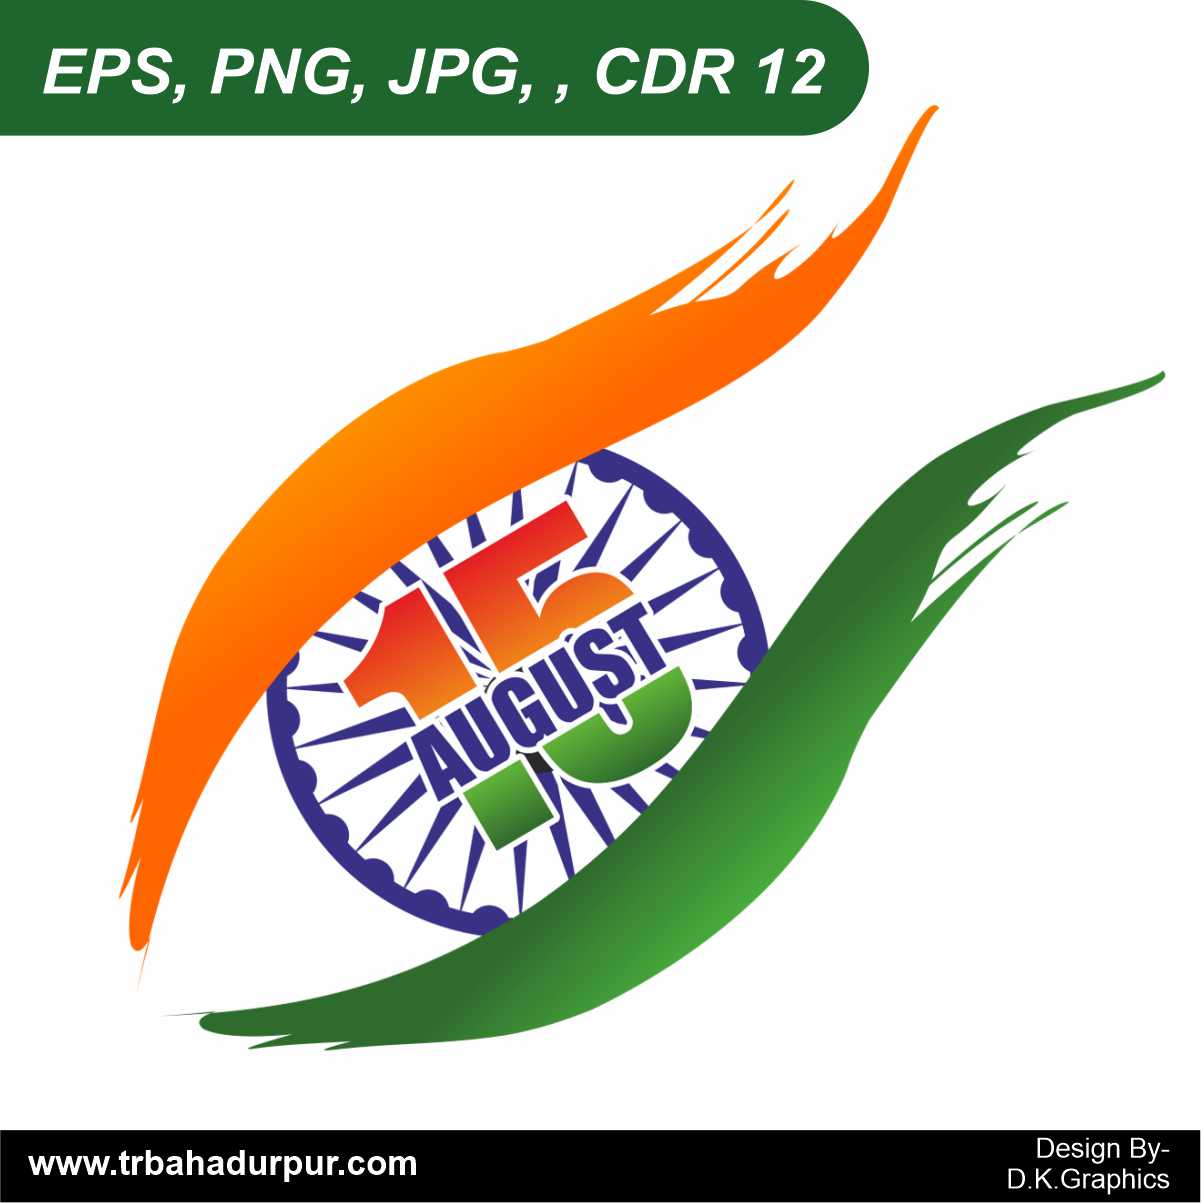 PD Logo or DP Logo by Sabuj Ali on Dribbble